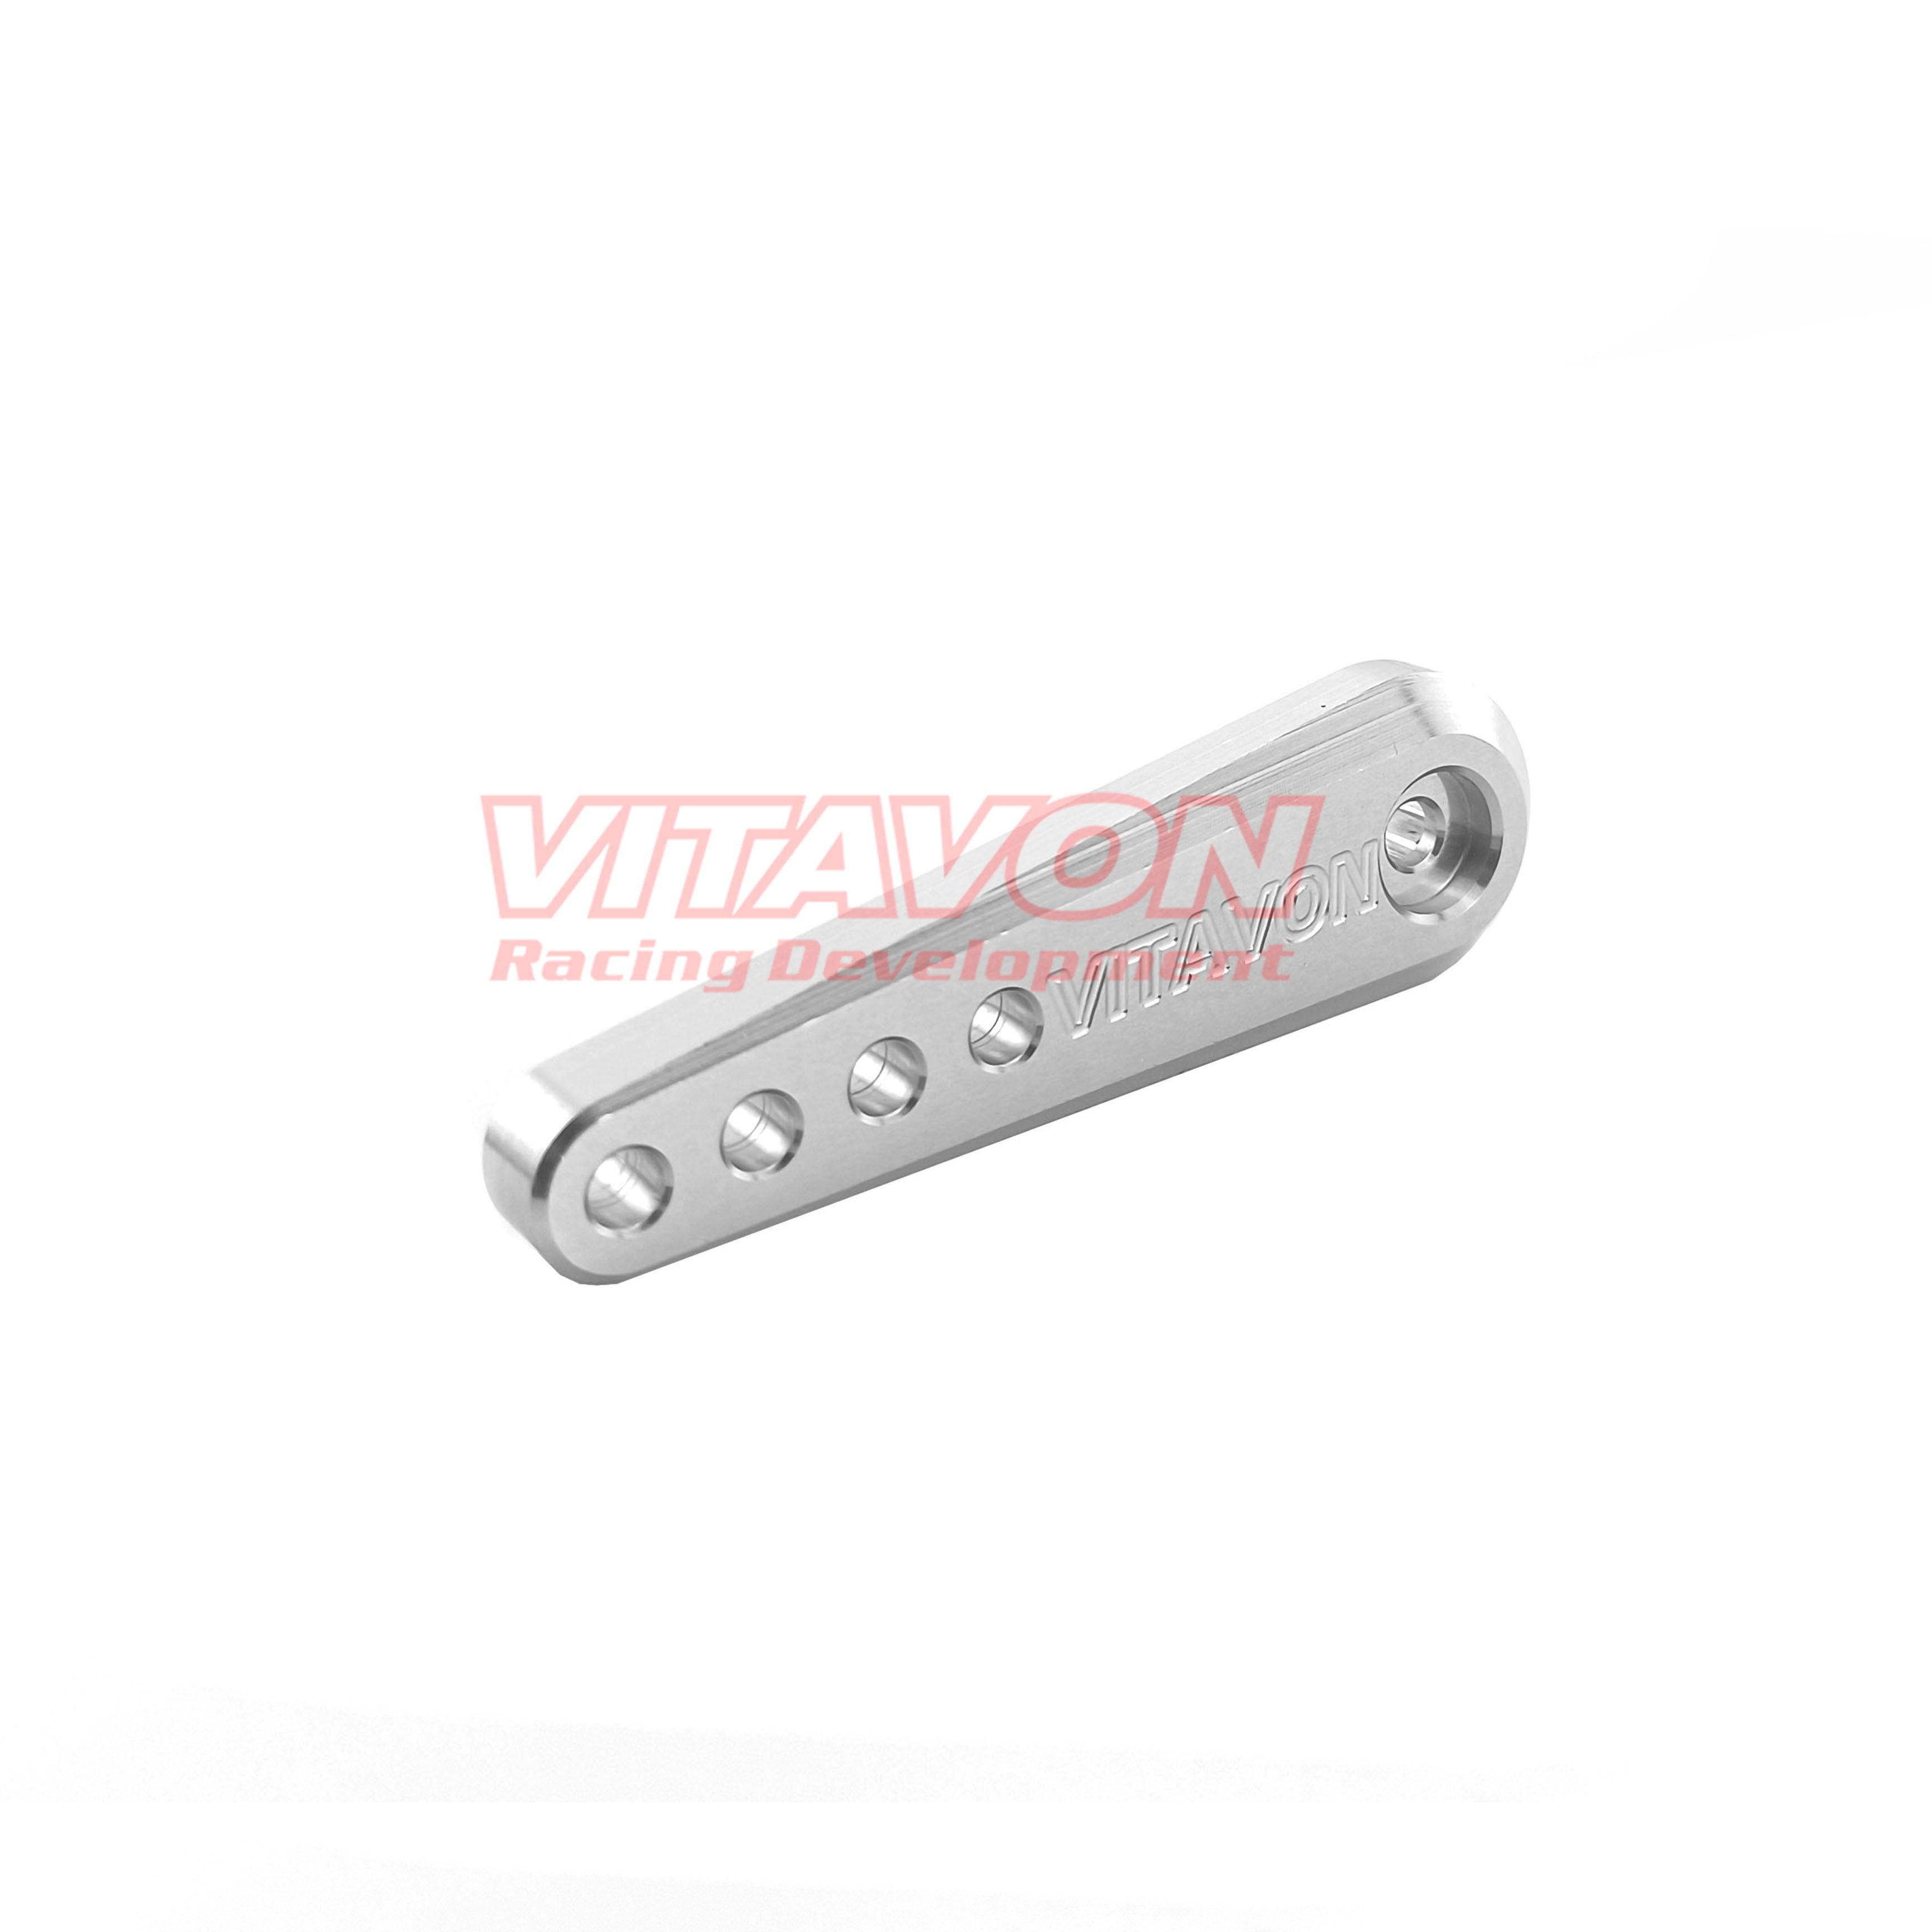 VITAVON CNC Aluminum #7075 servo arm 15T for 1/5 truck